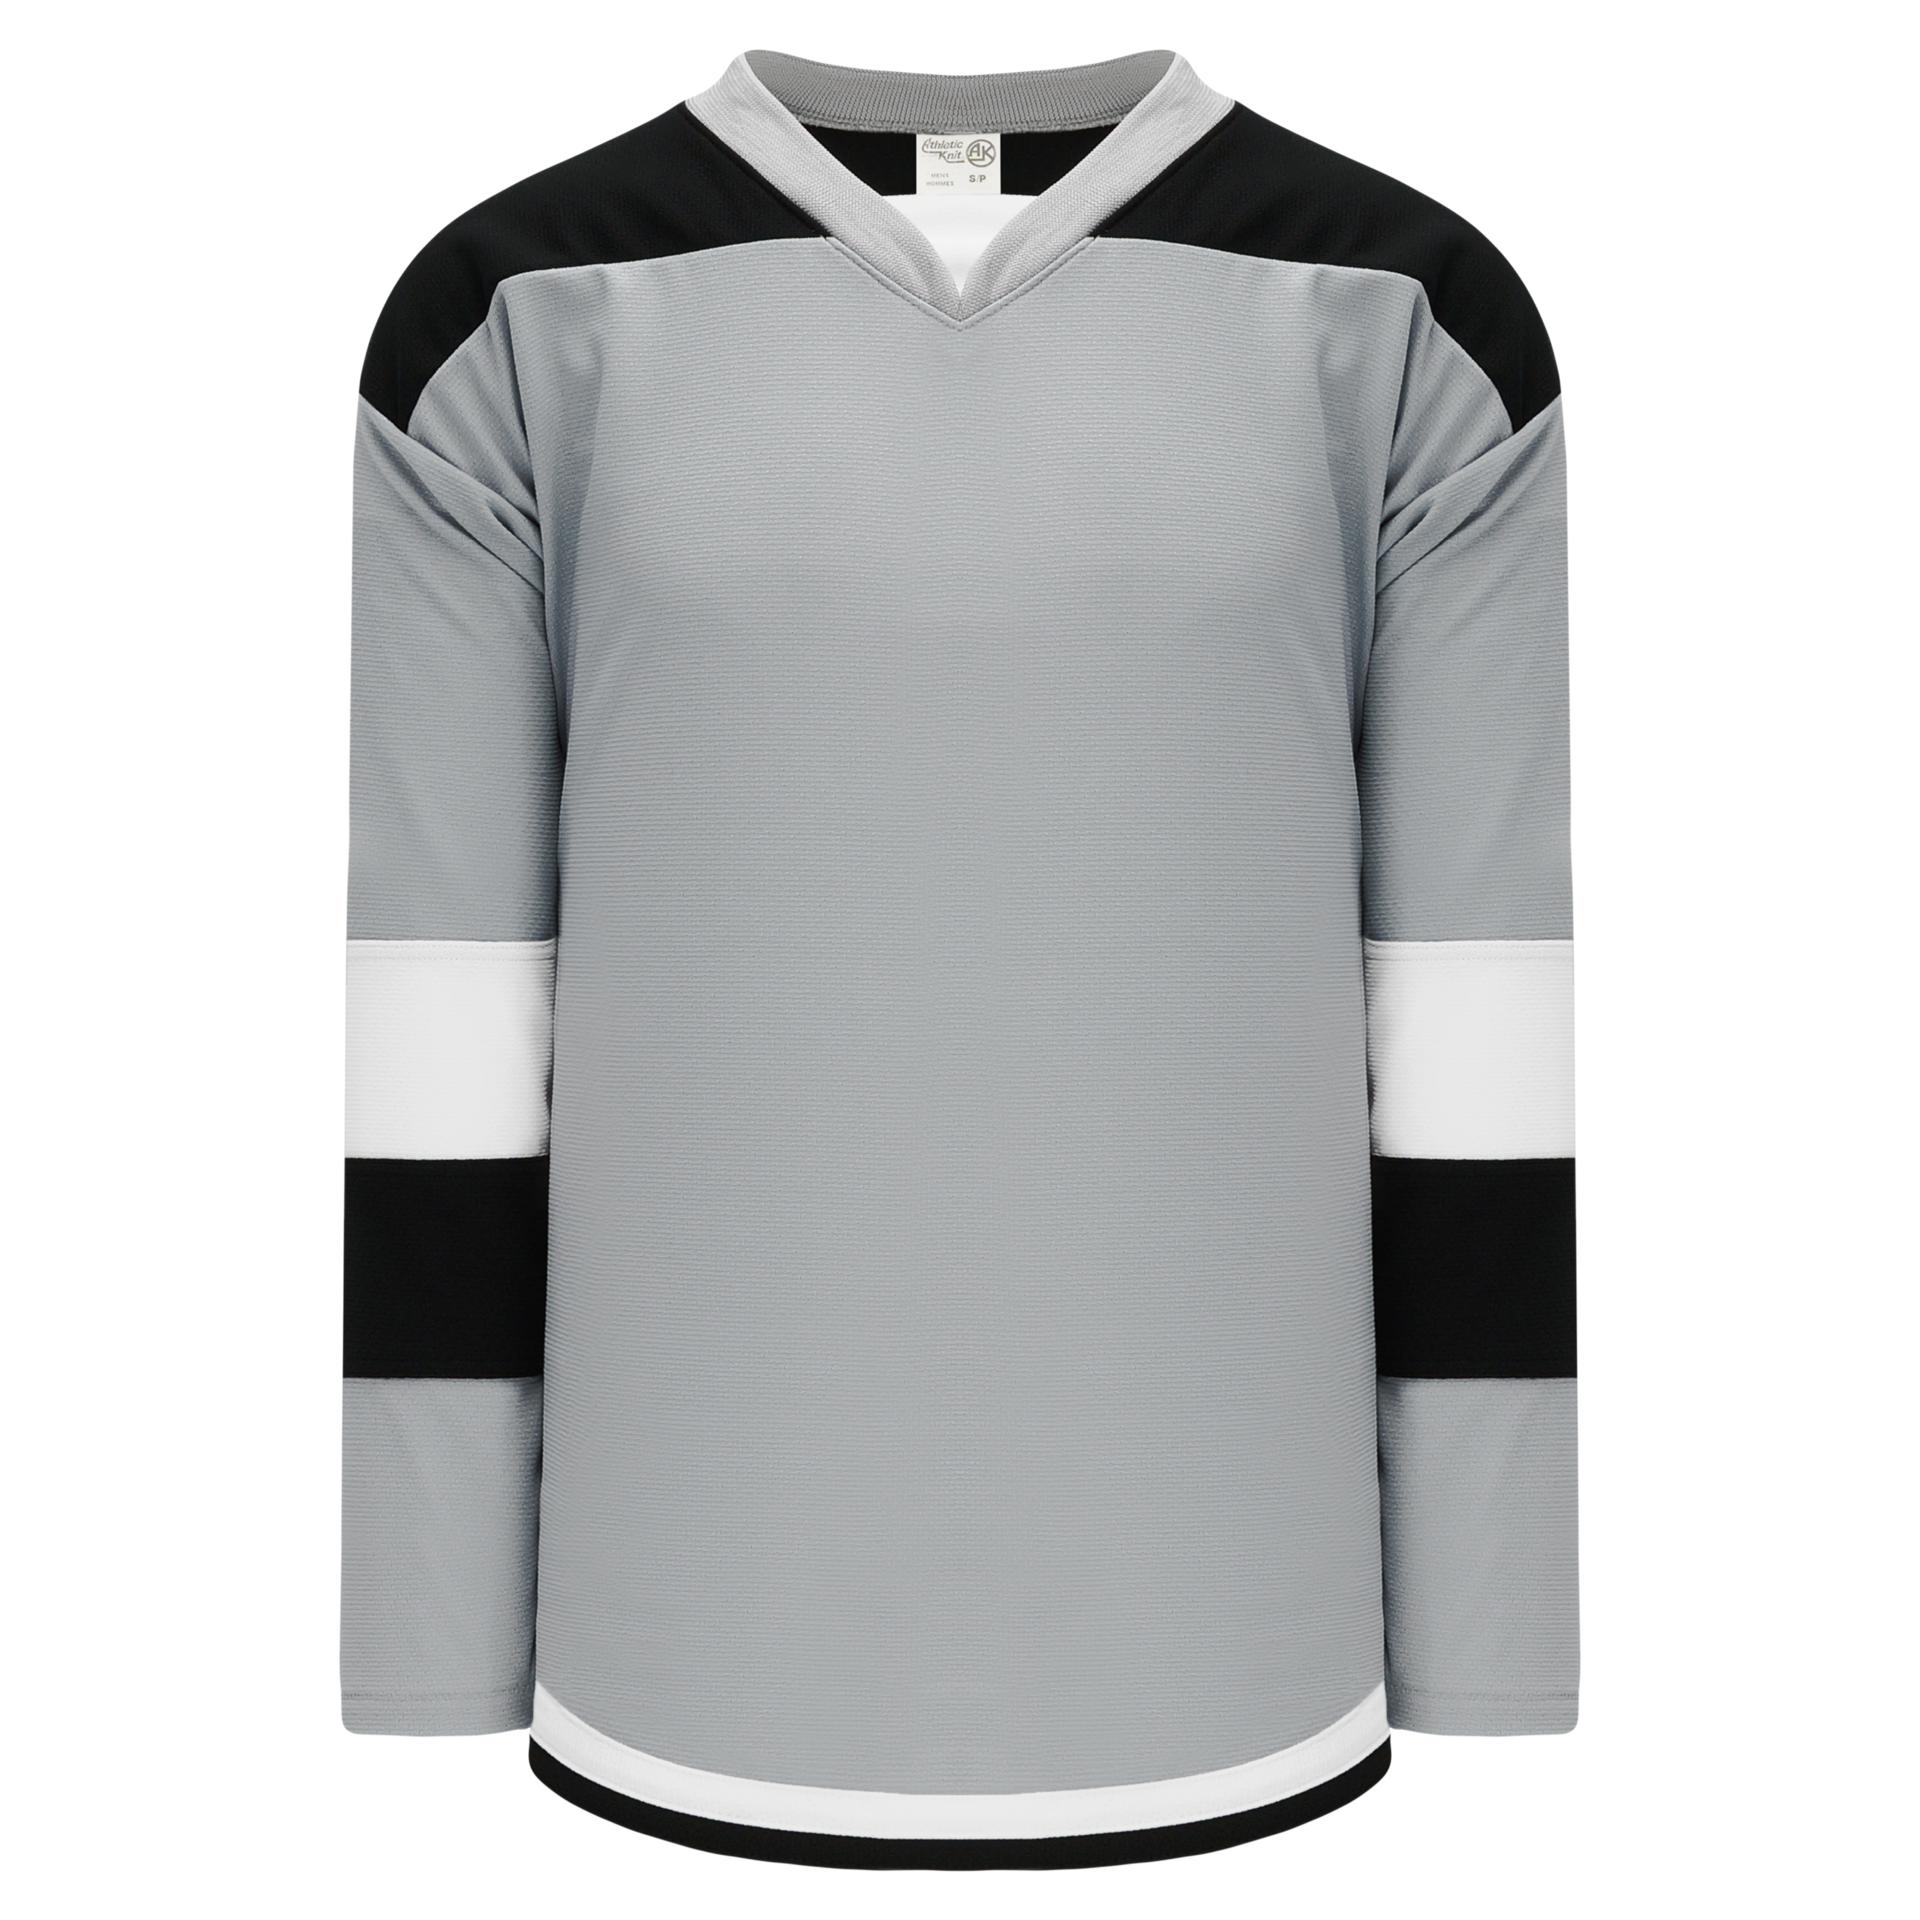 Blank Hockey Jerseys Wholesale  Cheap Blank Hockey Jerseys - H900